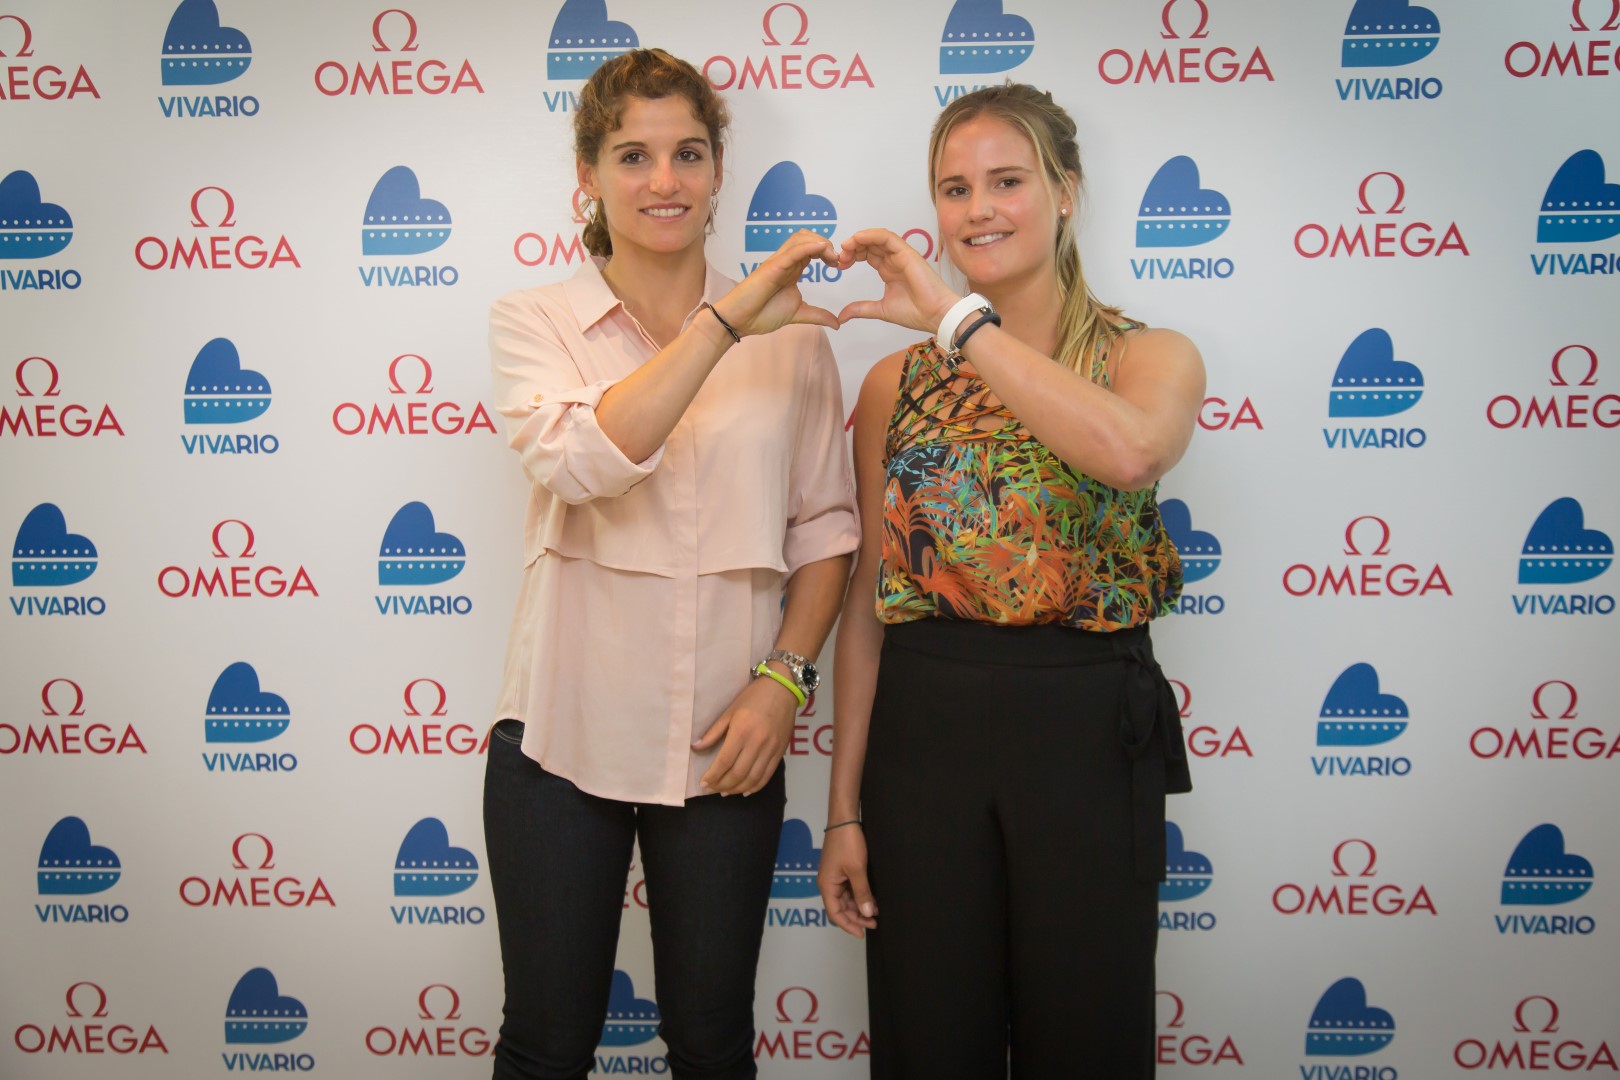 Olimpiadi Rio de Janeiro 2016: Omega presenta il progetto #OMEGAVIVARIO